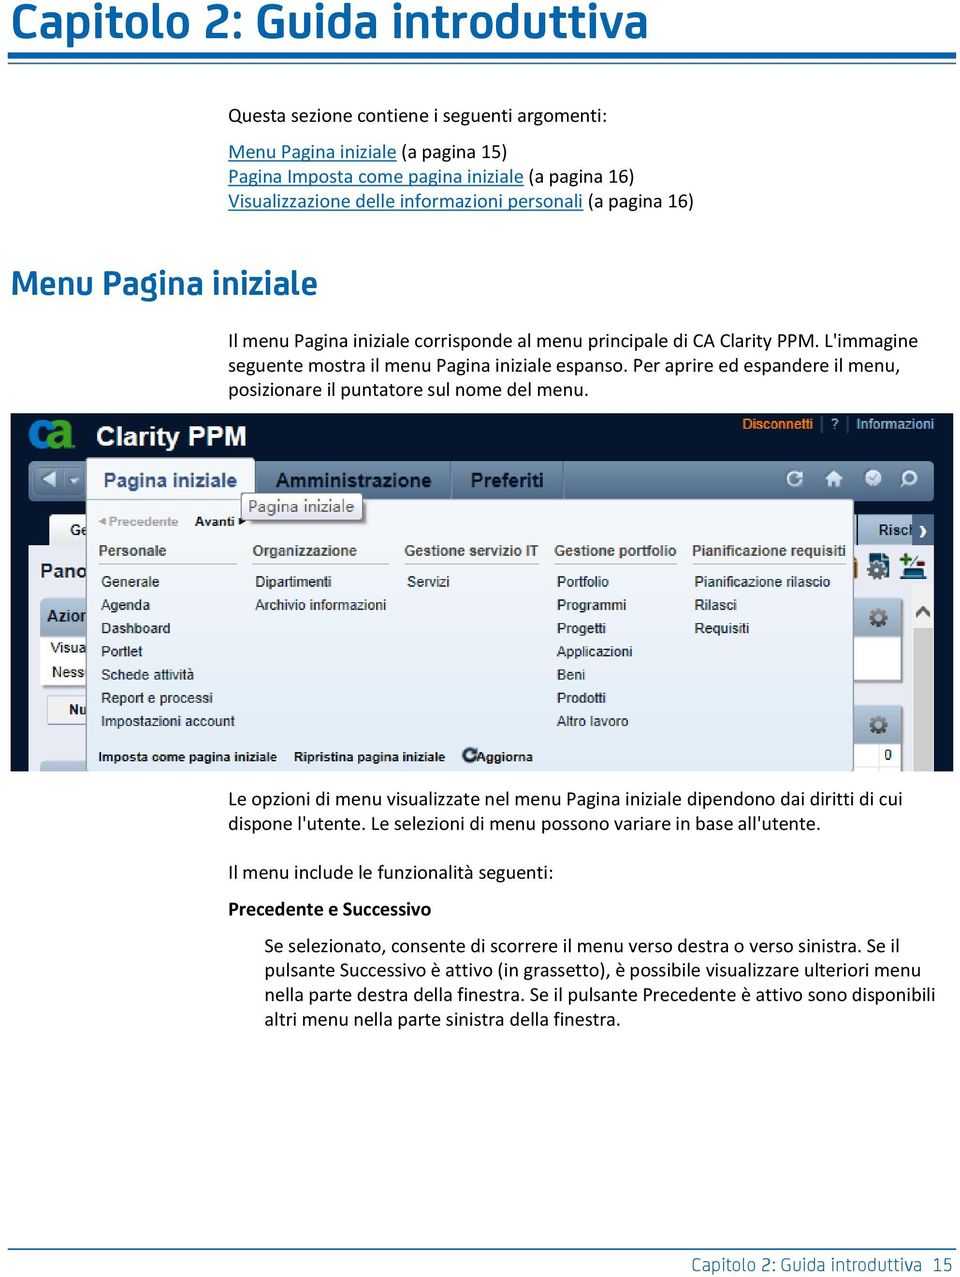 Per aprire ed espandere il menu, posizionare il puntatore sul nome del menu. Le opzioni di menu visualizzate nel menu Pagina iniziale dipendono dai diritti di cui dispone l'utente.